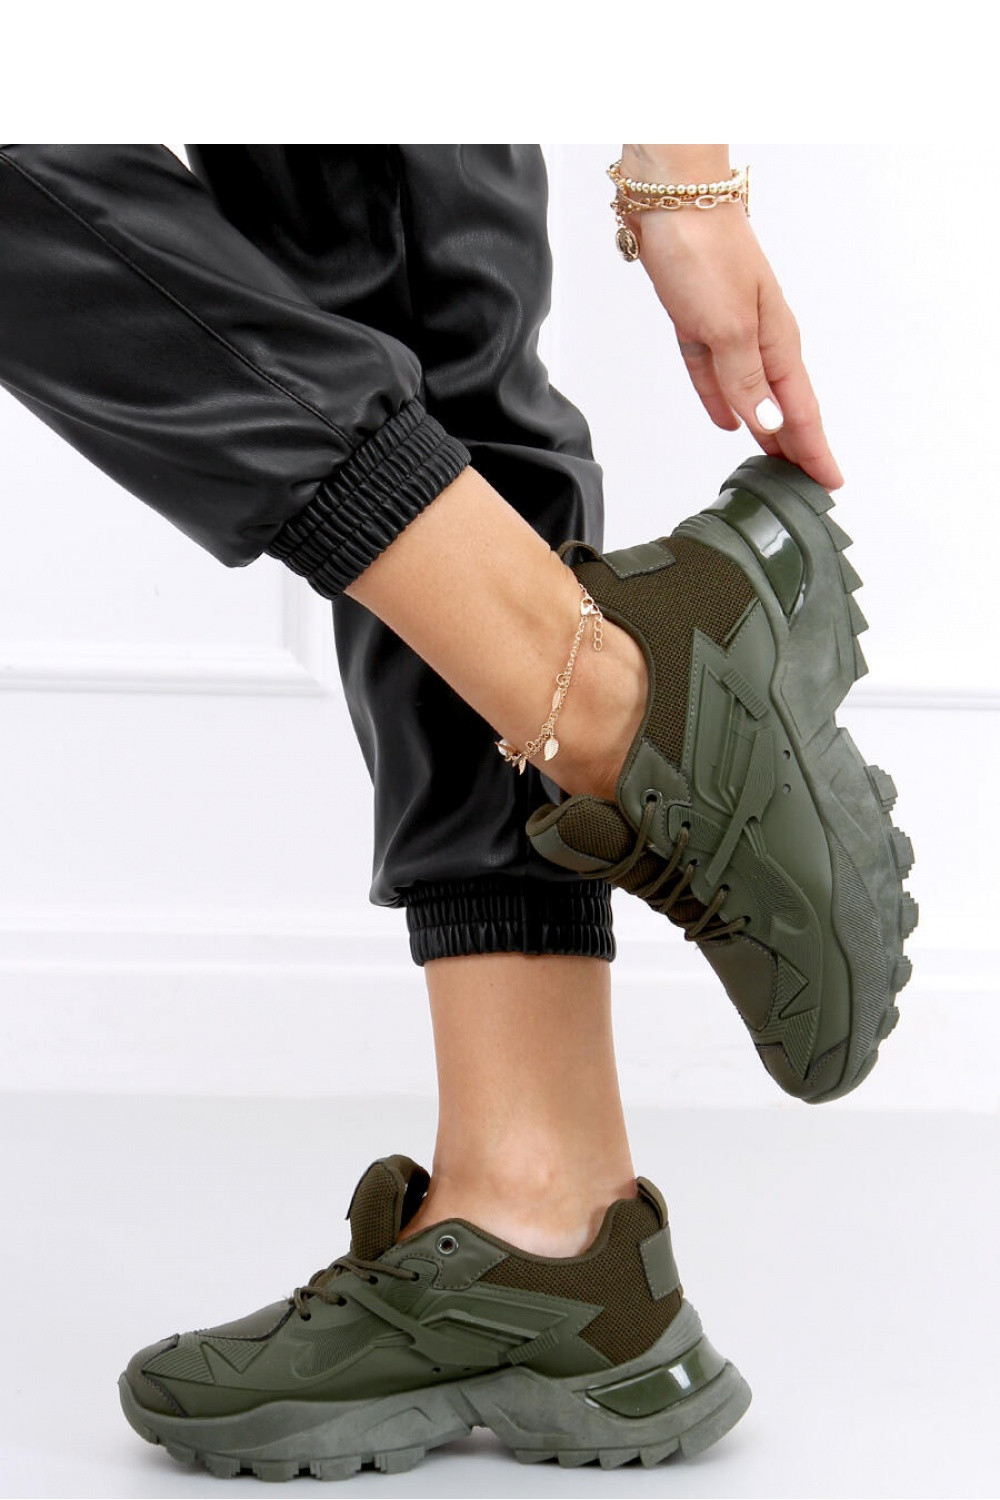 Dámská sportovní obuv / tenisky model 18523073 khaki zelená khakitm.zelená 37 - Inello